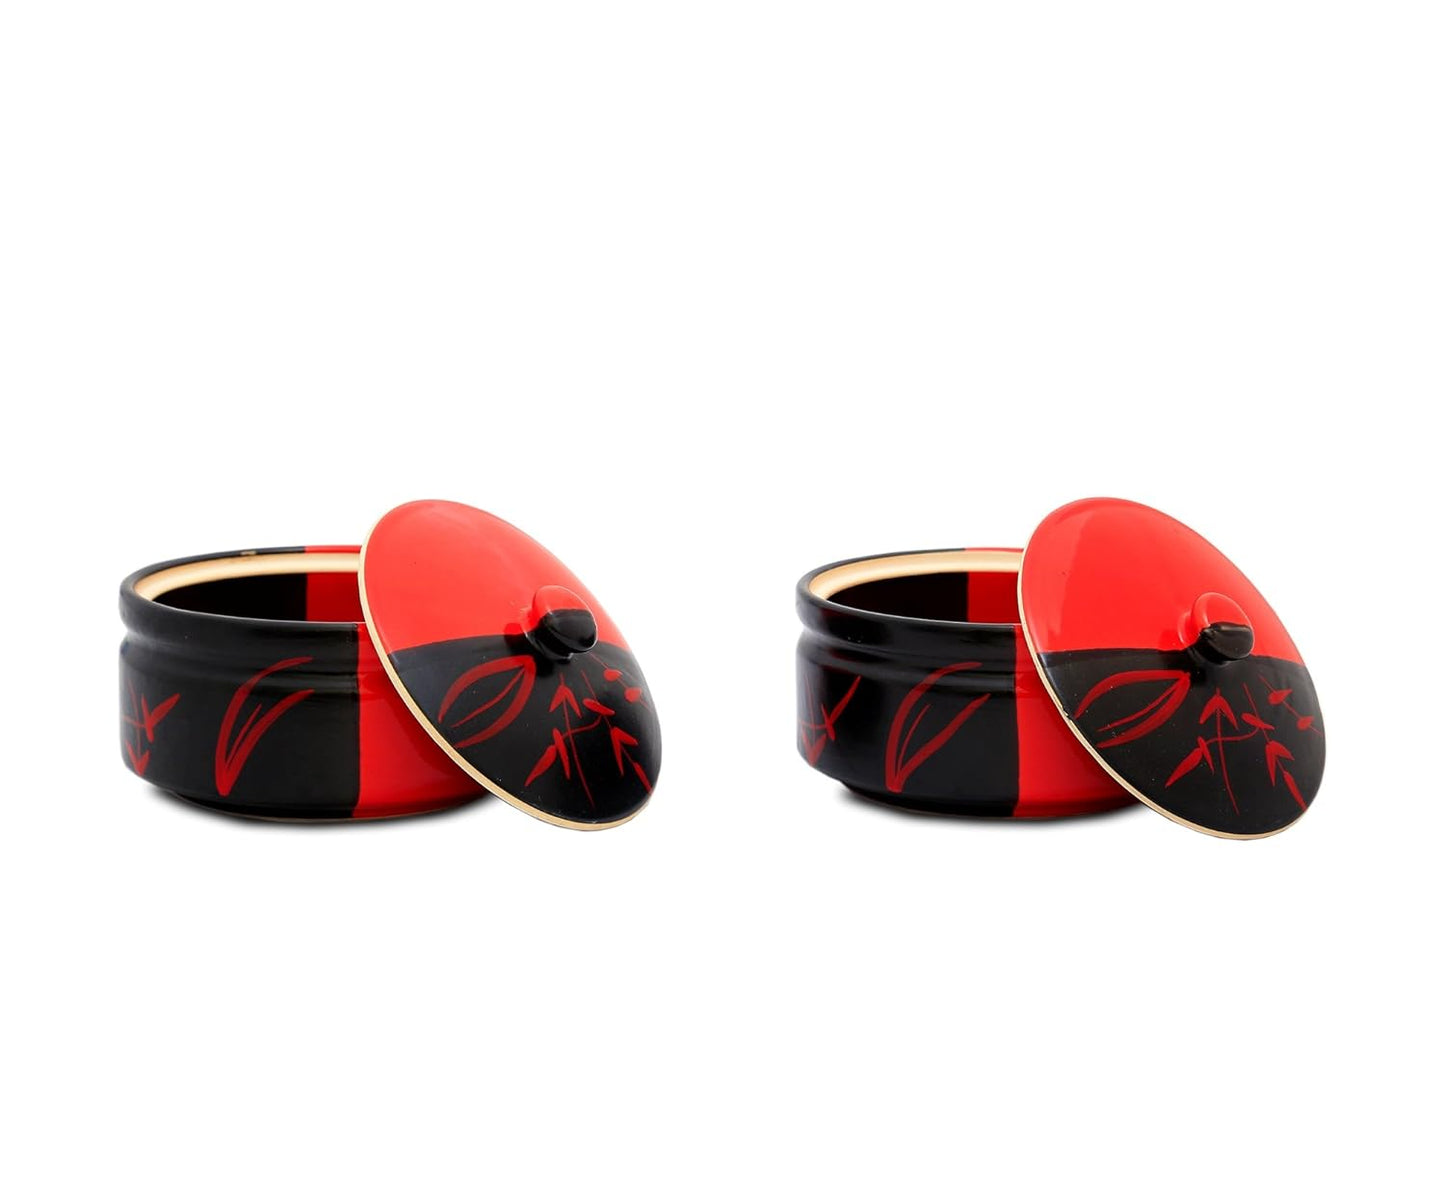 Caffeine Ceramic Handmade Half Red and Black Dinner Set (37 pieces - Microwave & Dishwasher Safe) - Caffeine Premium Stoneware